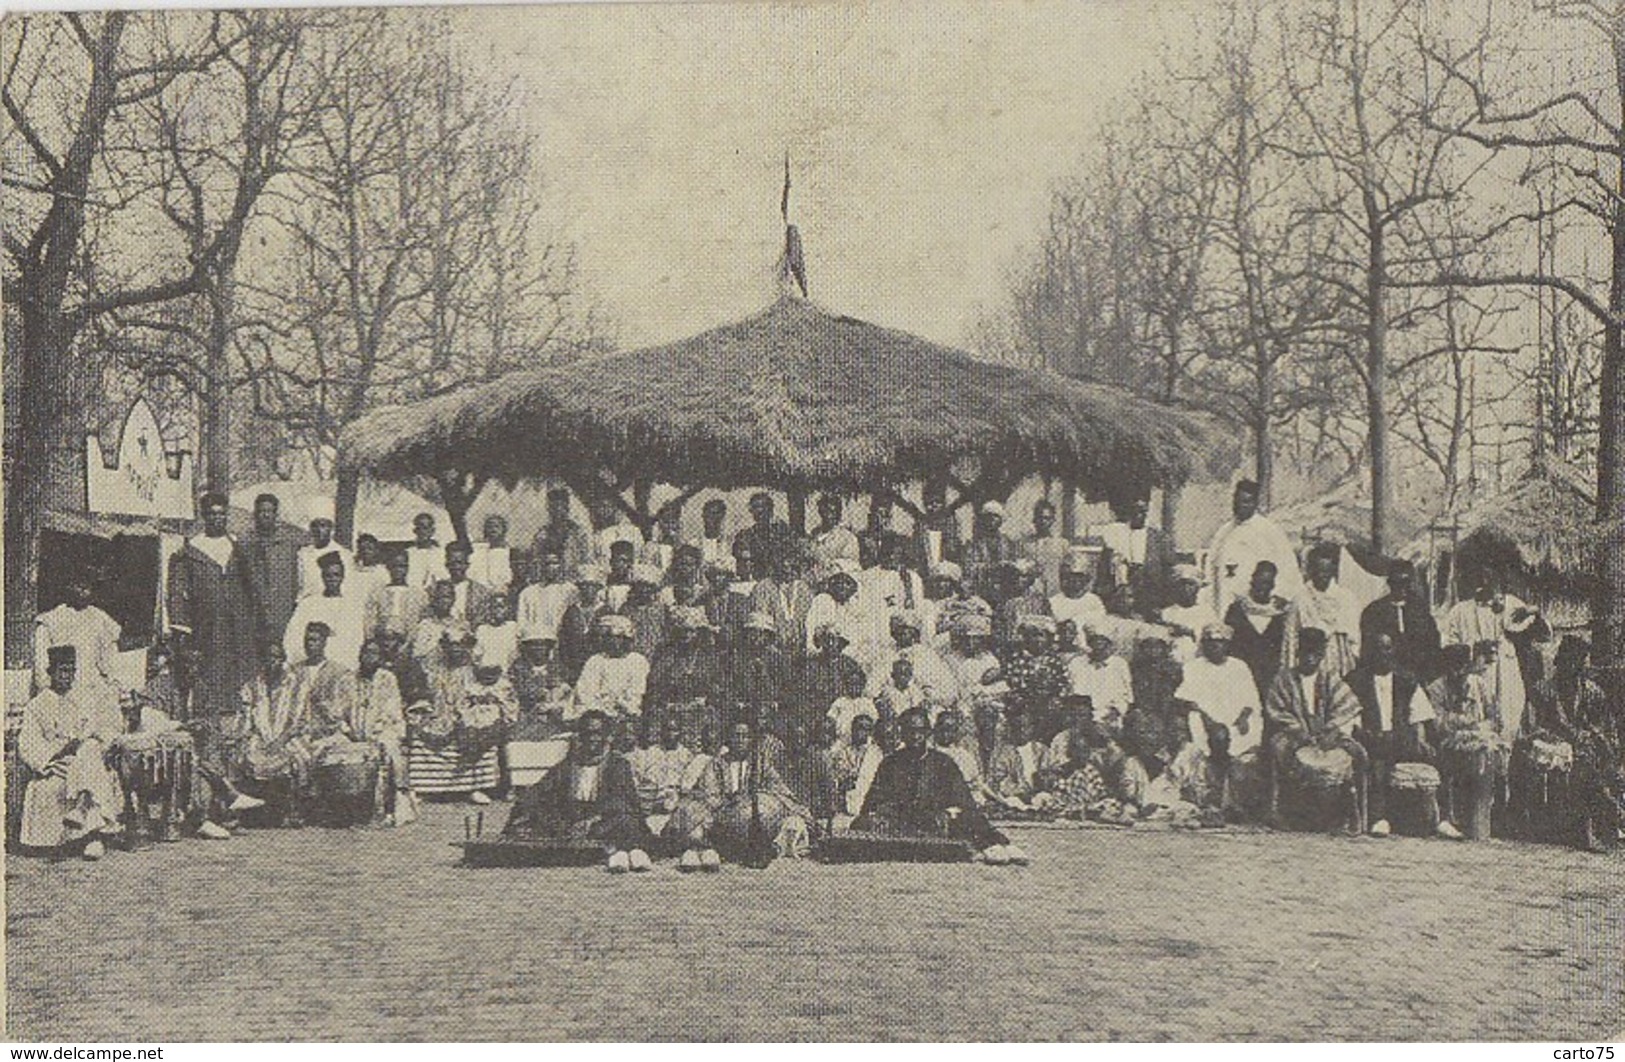 Ethniques Et Cultures - Afrique - Exposition "Villages Noirs" - Propagande Franco-Coloniale - Editions Fontenay Paris - Afrique